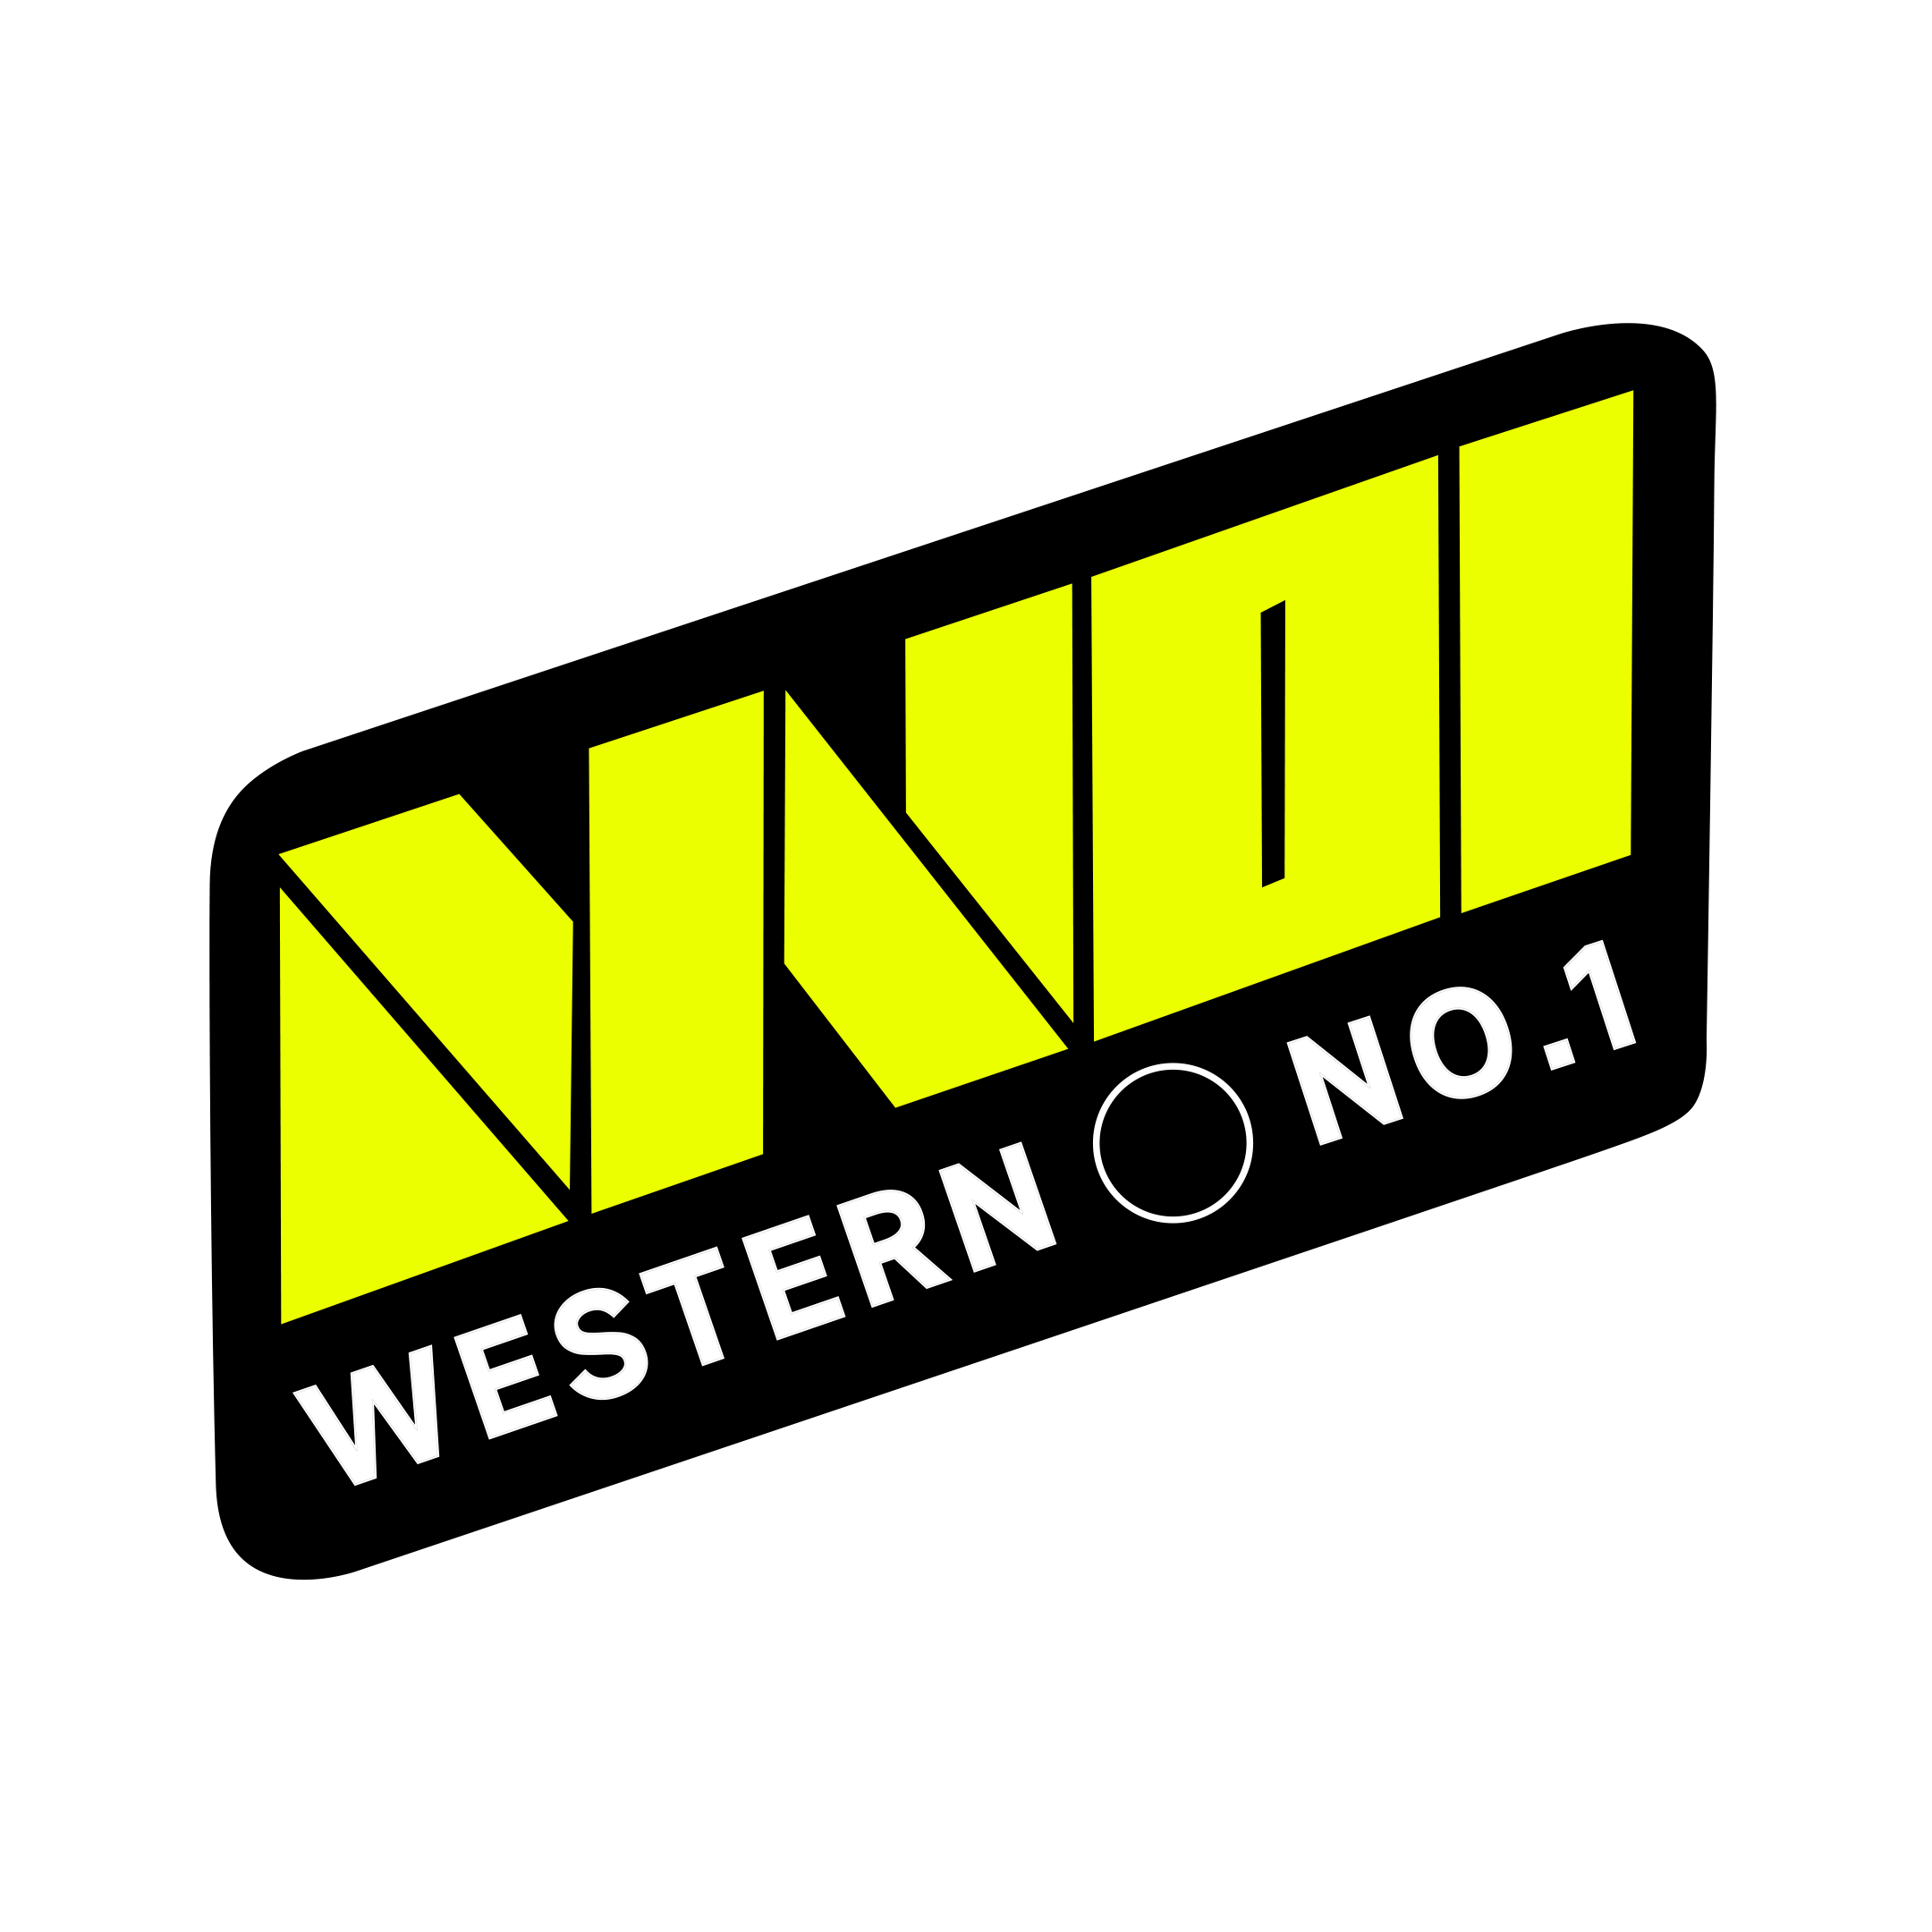 Western NO.1